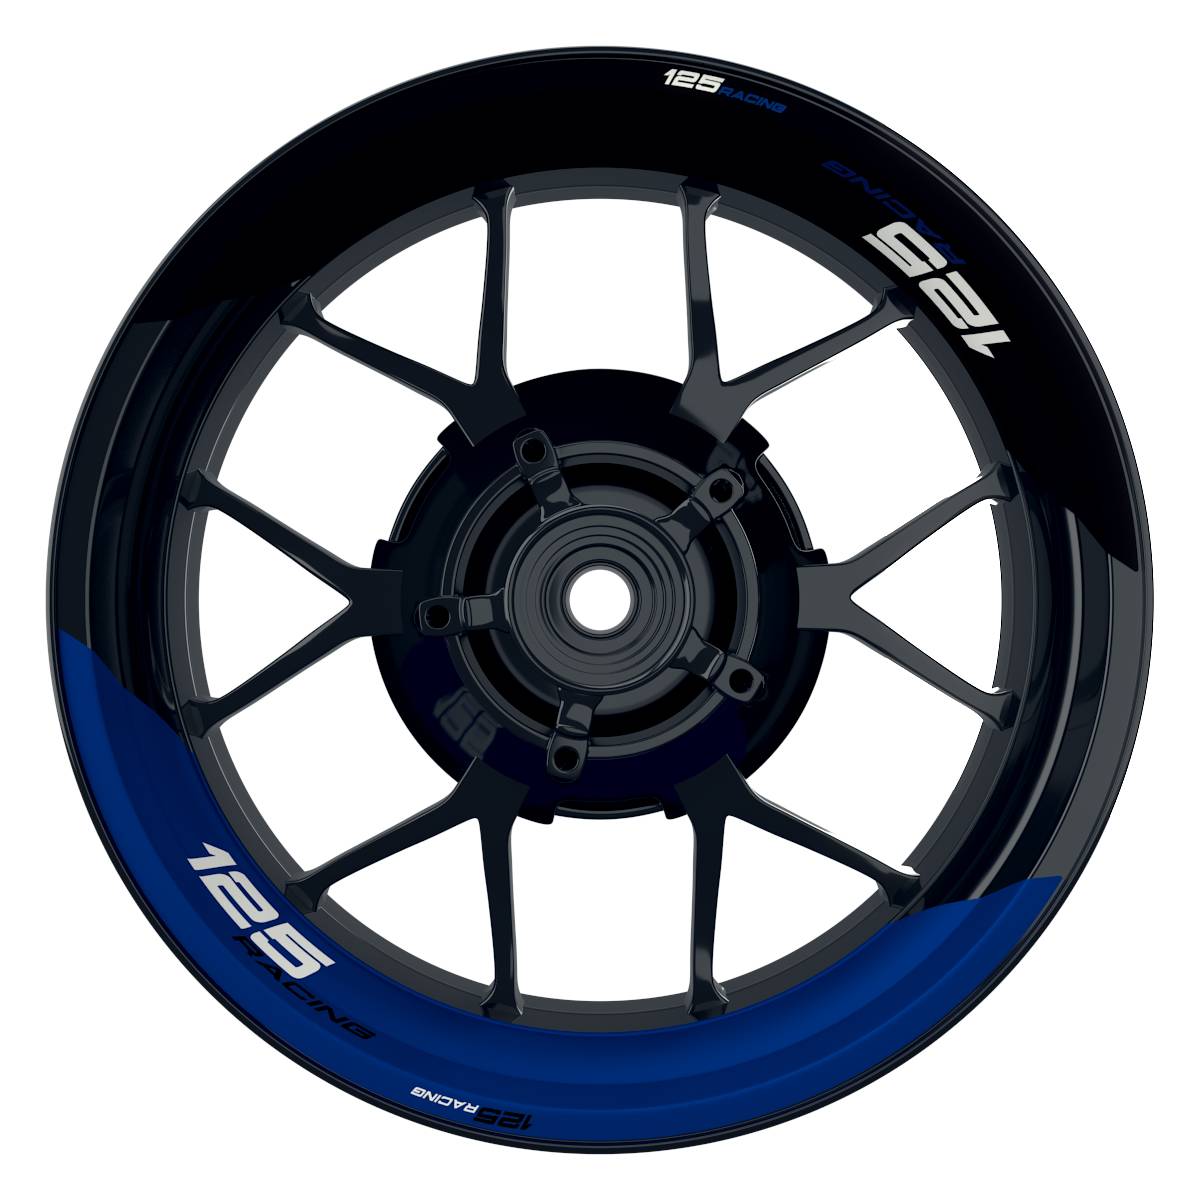 KTM Racing 125 halb halb schwarz blau Frontansicht